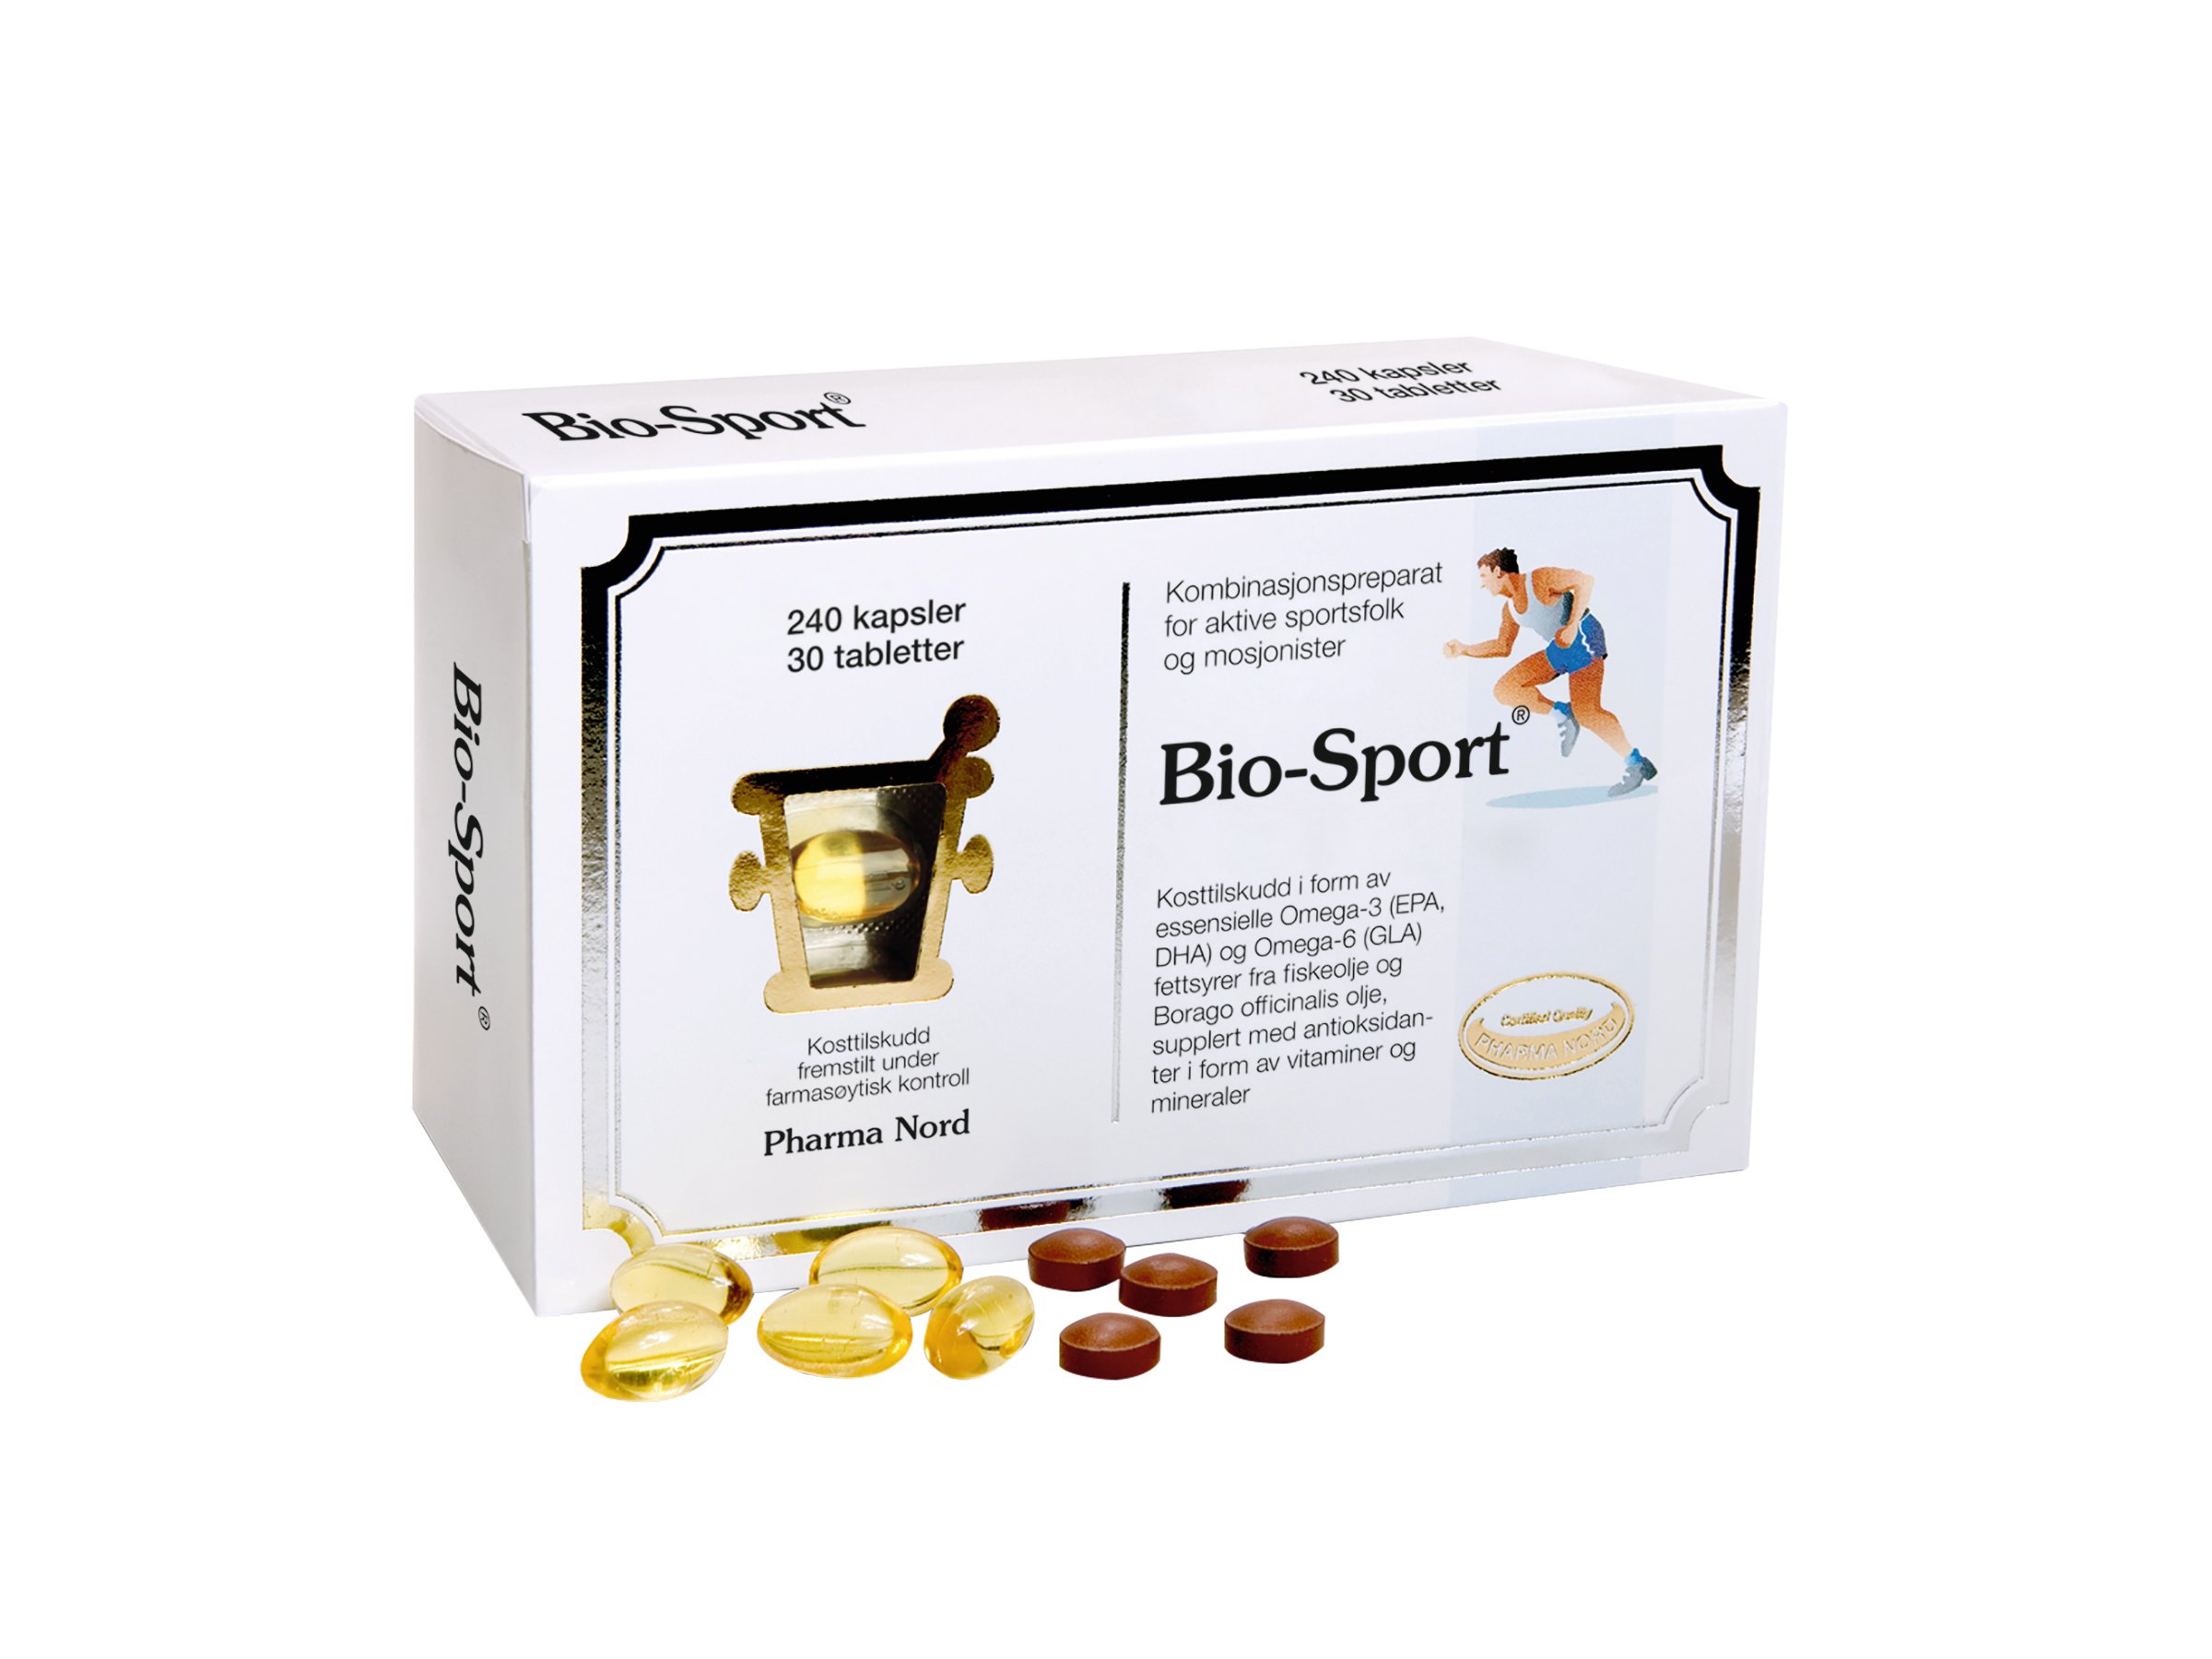 Pharma Nord Bio-sport, 240 kapsler +30 tabletter